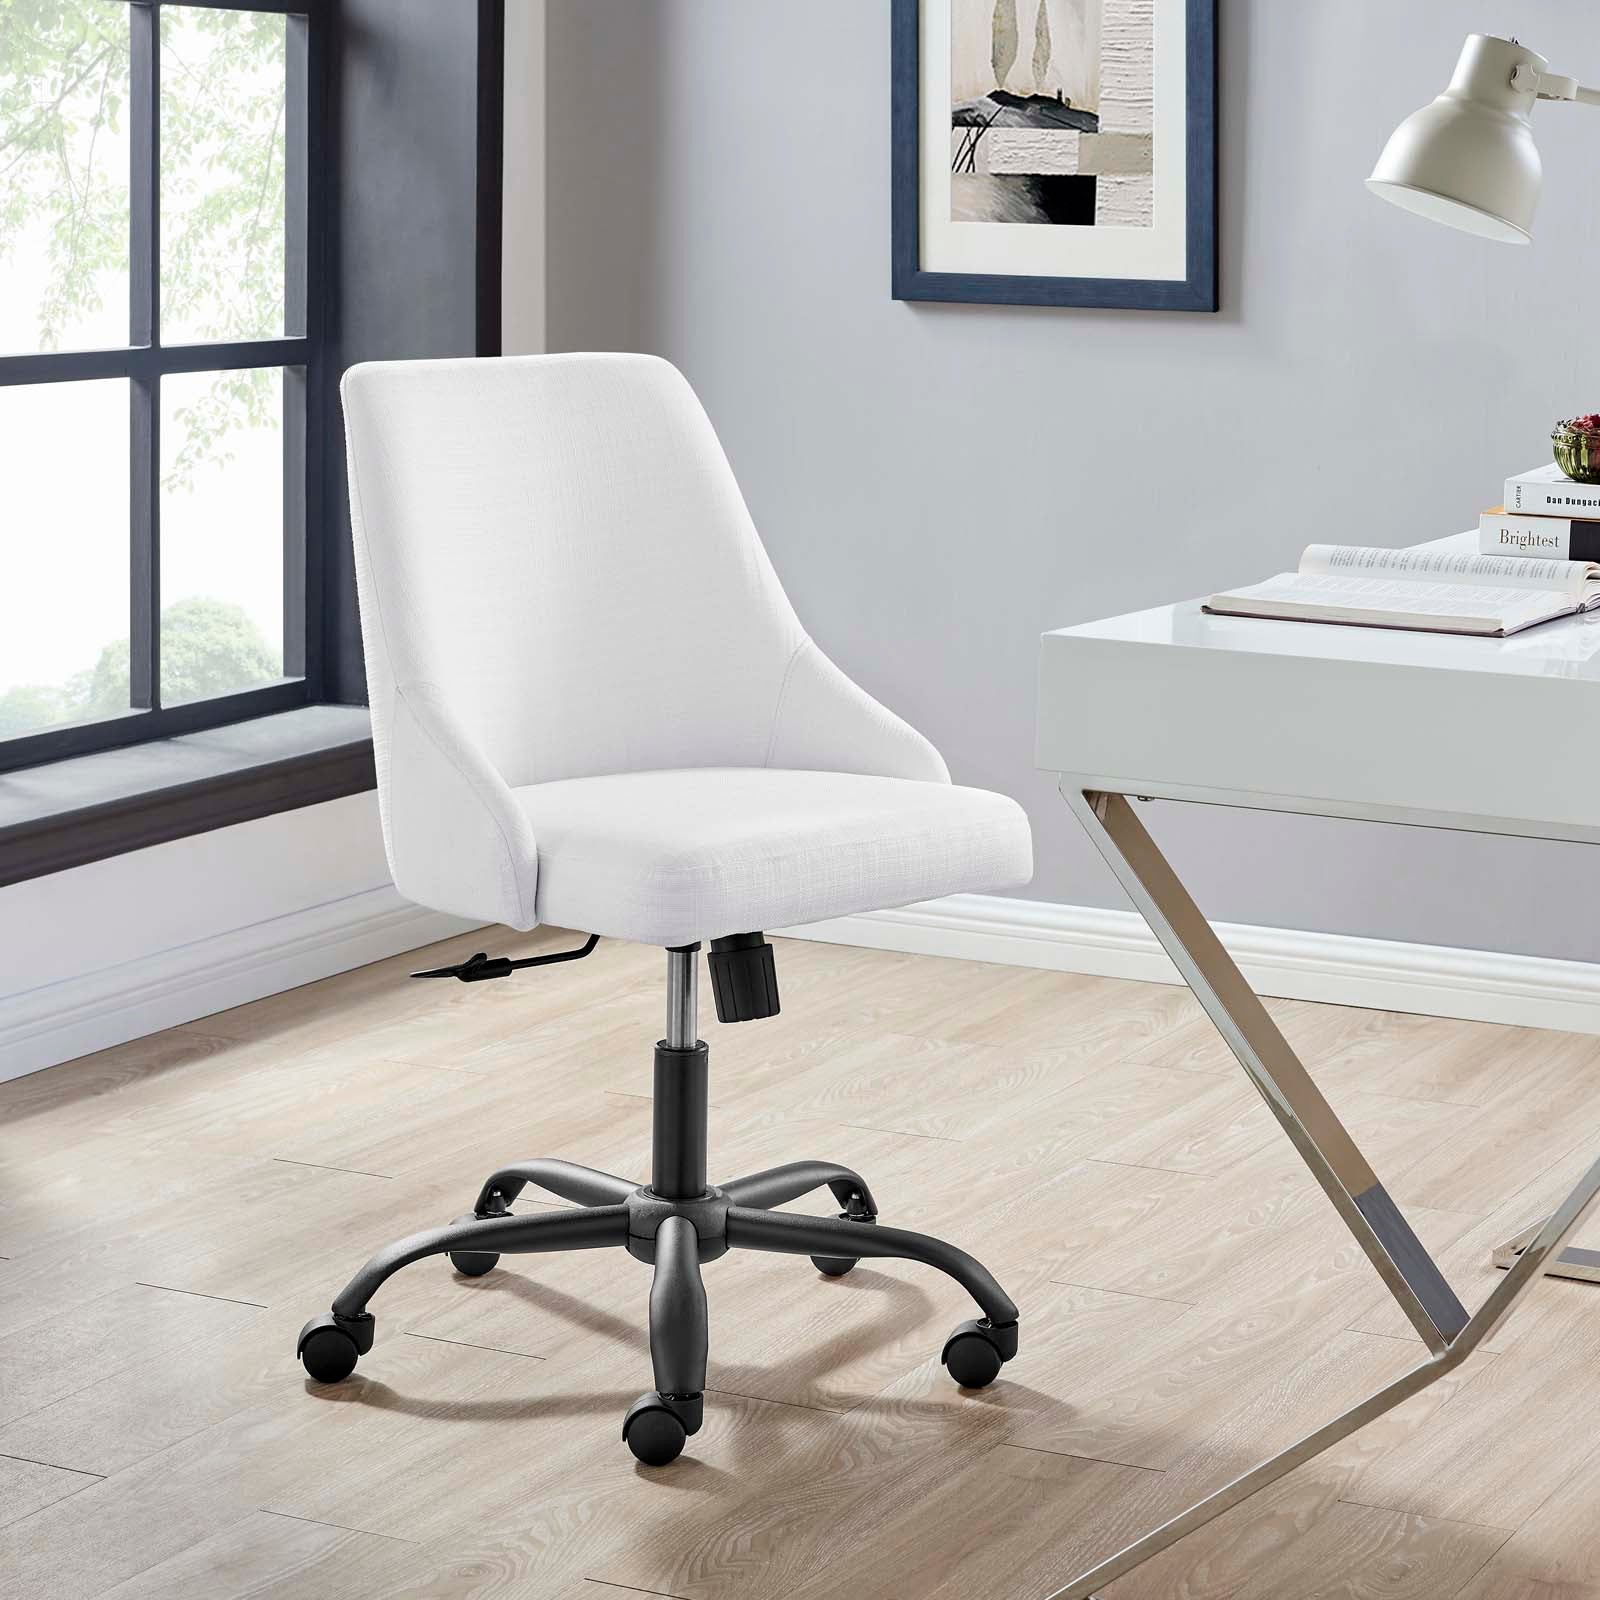 Designate Swivel Upholstered Office Chair - East Shore Modern Home Furnishings